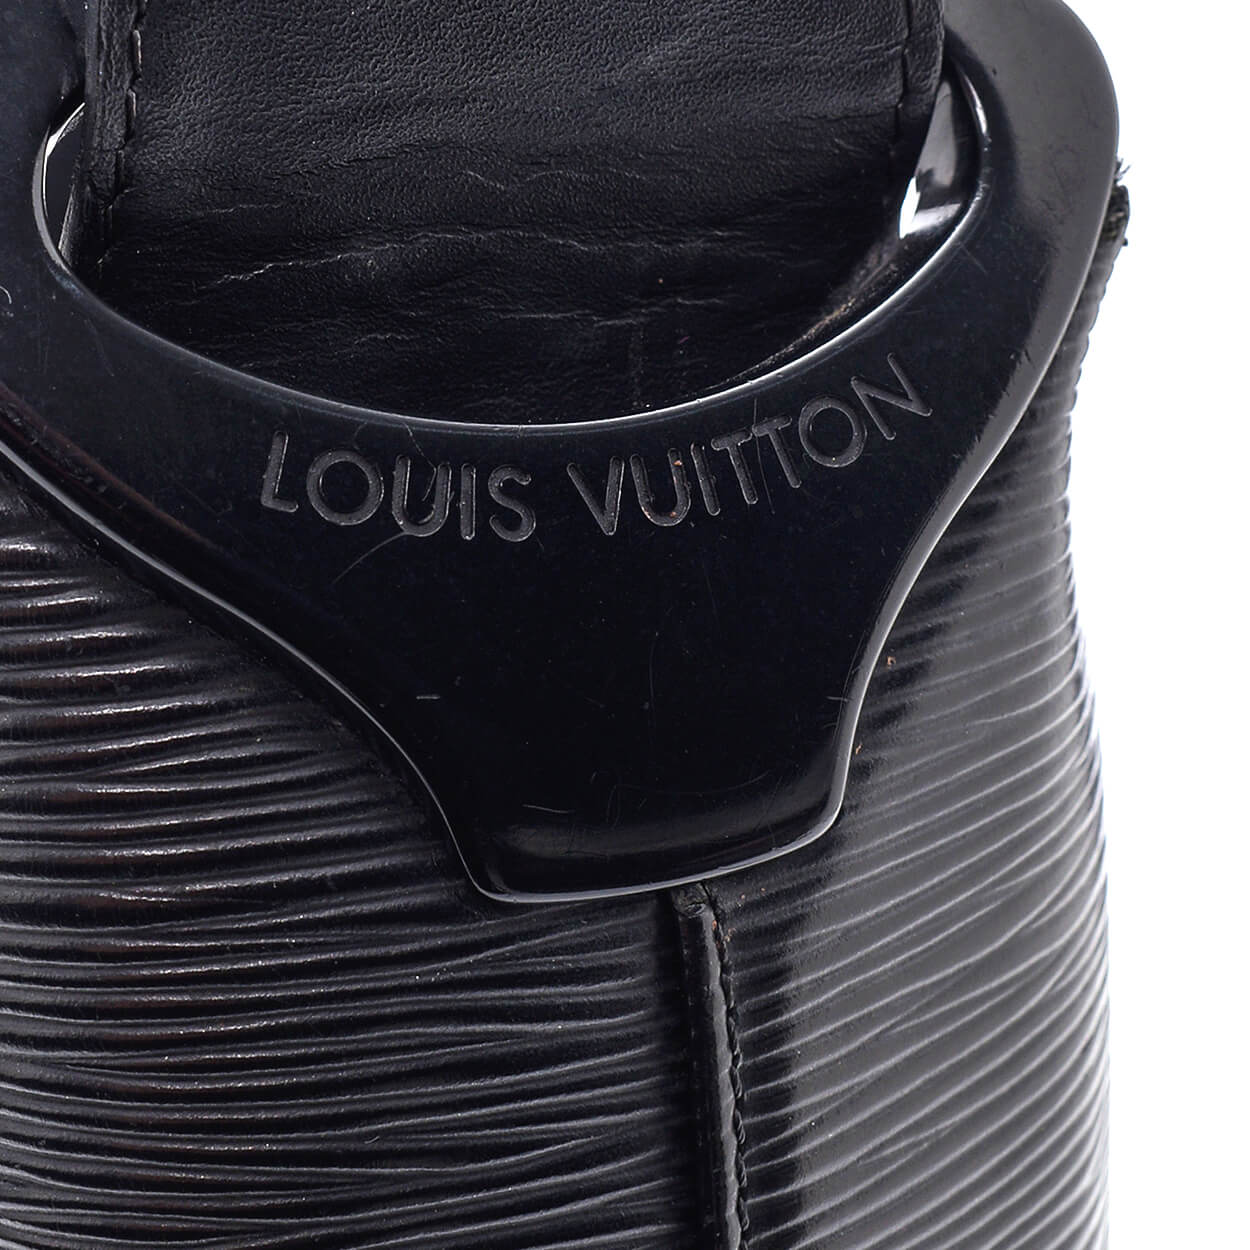 Louis Vuitton - Black Epi Leather Verseau Bag